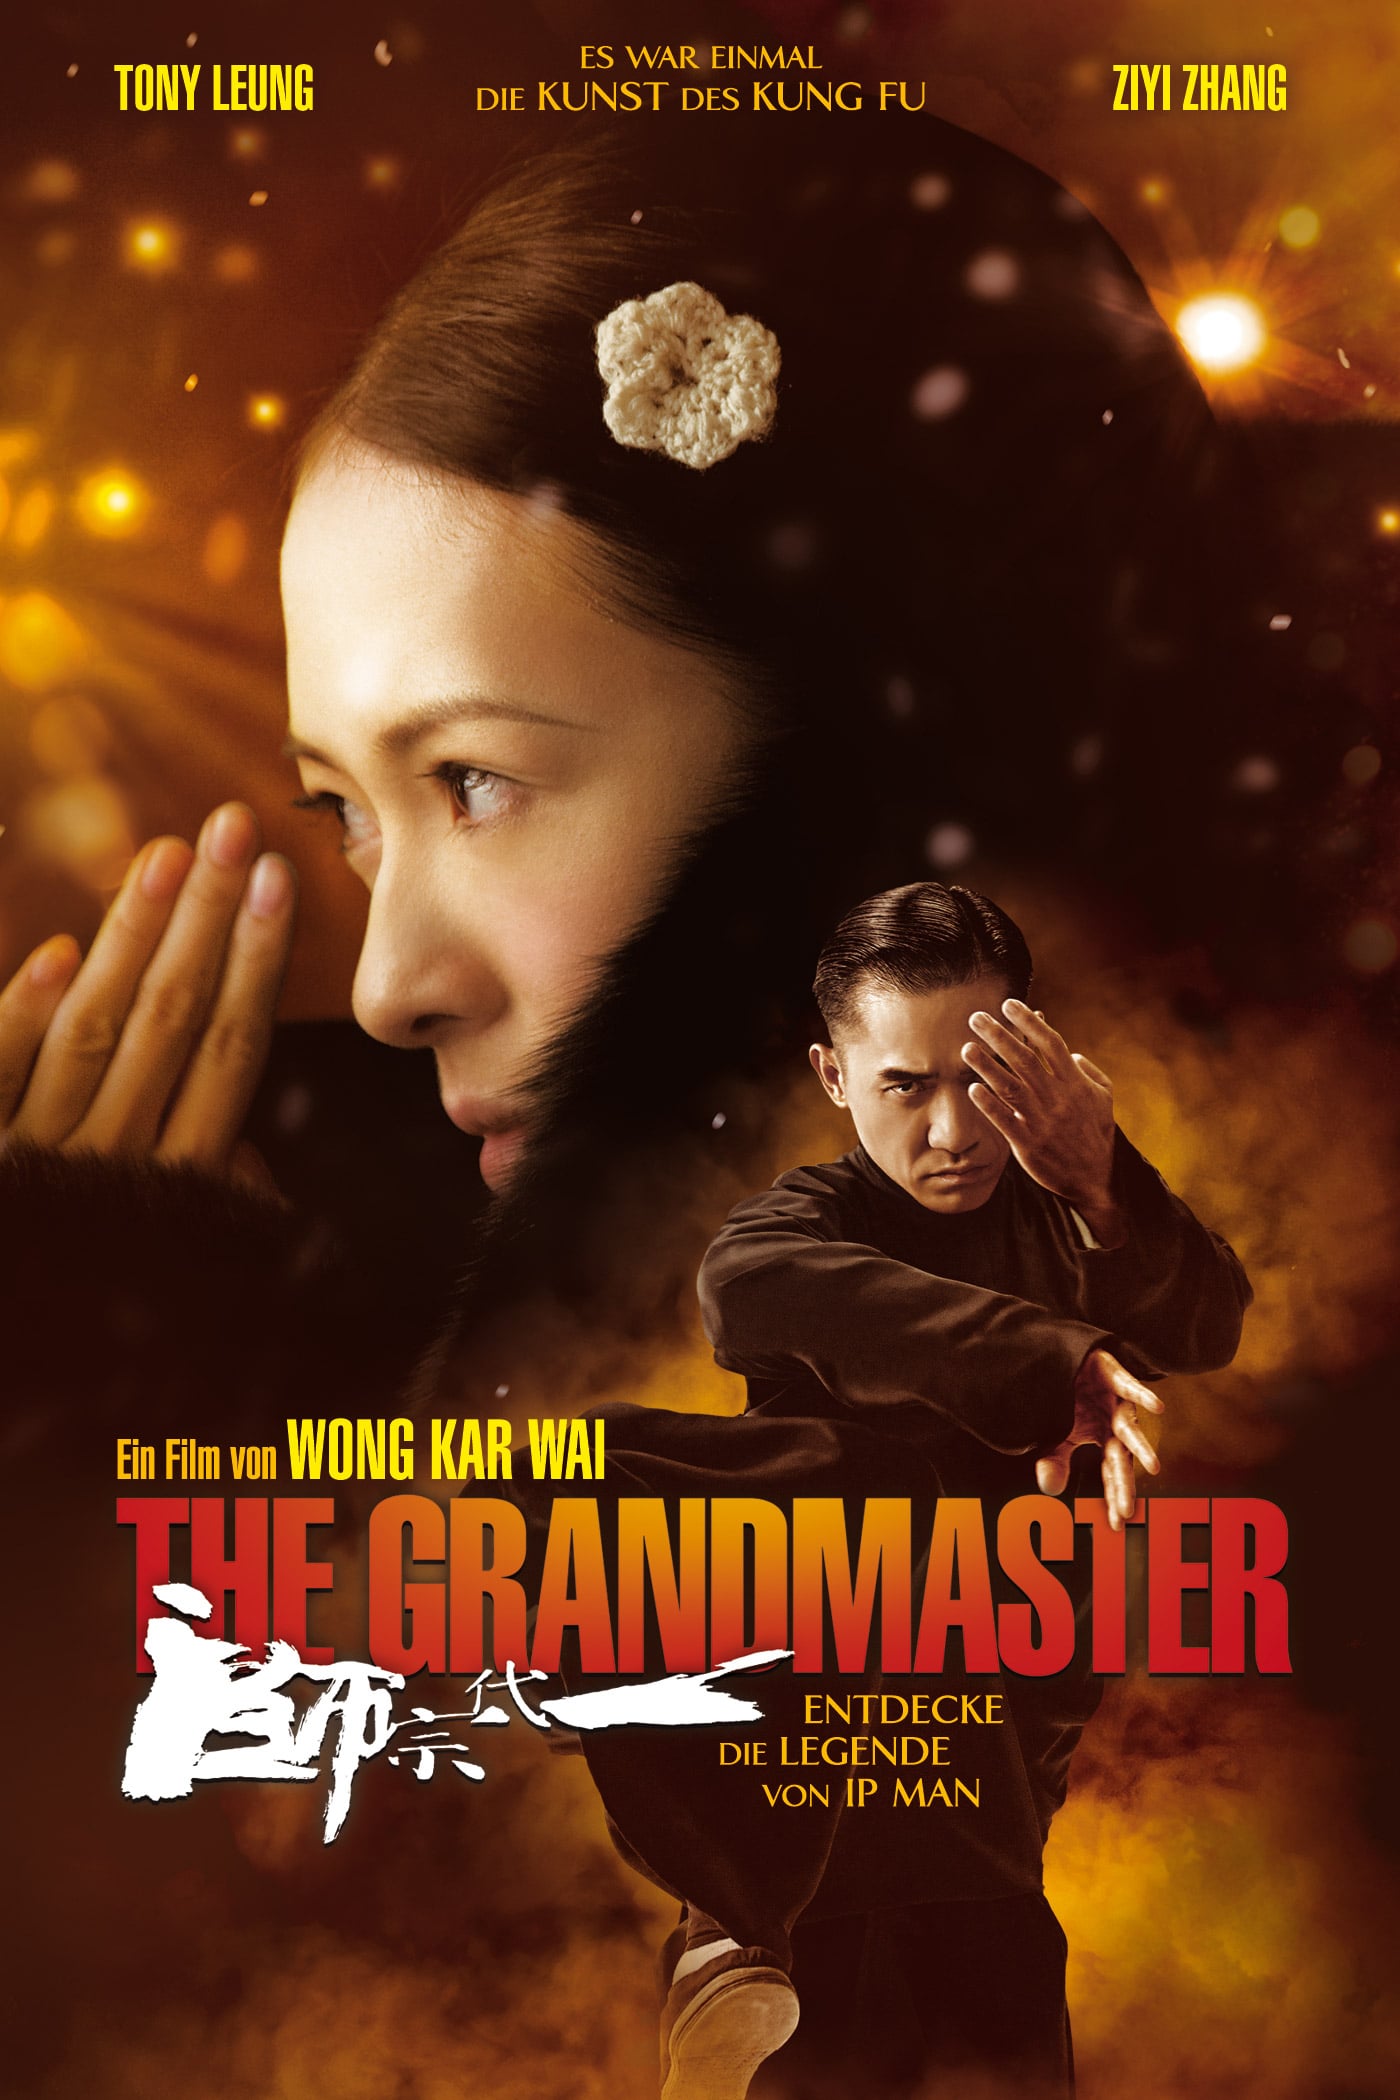 Plakat von "The Grandmaster"